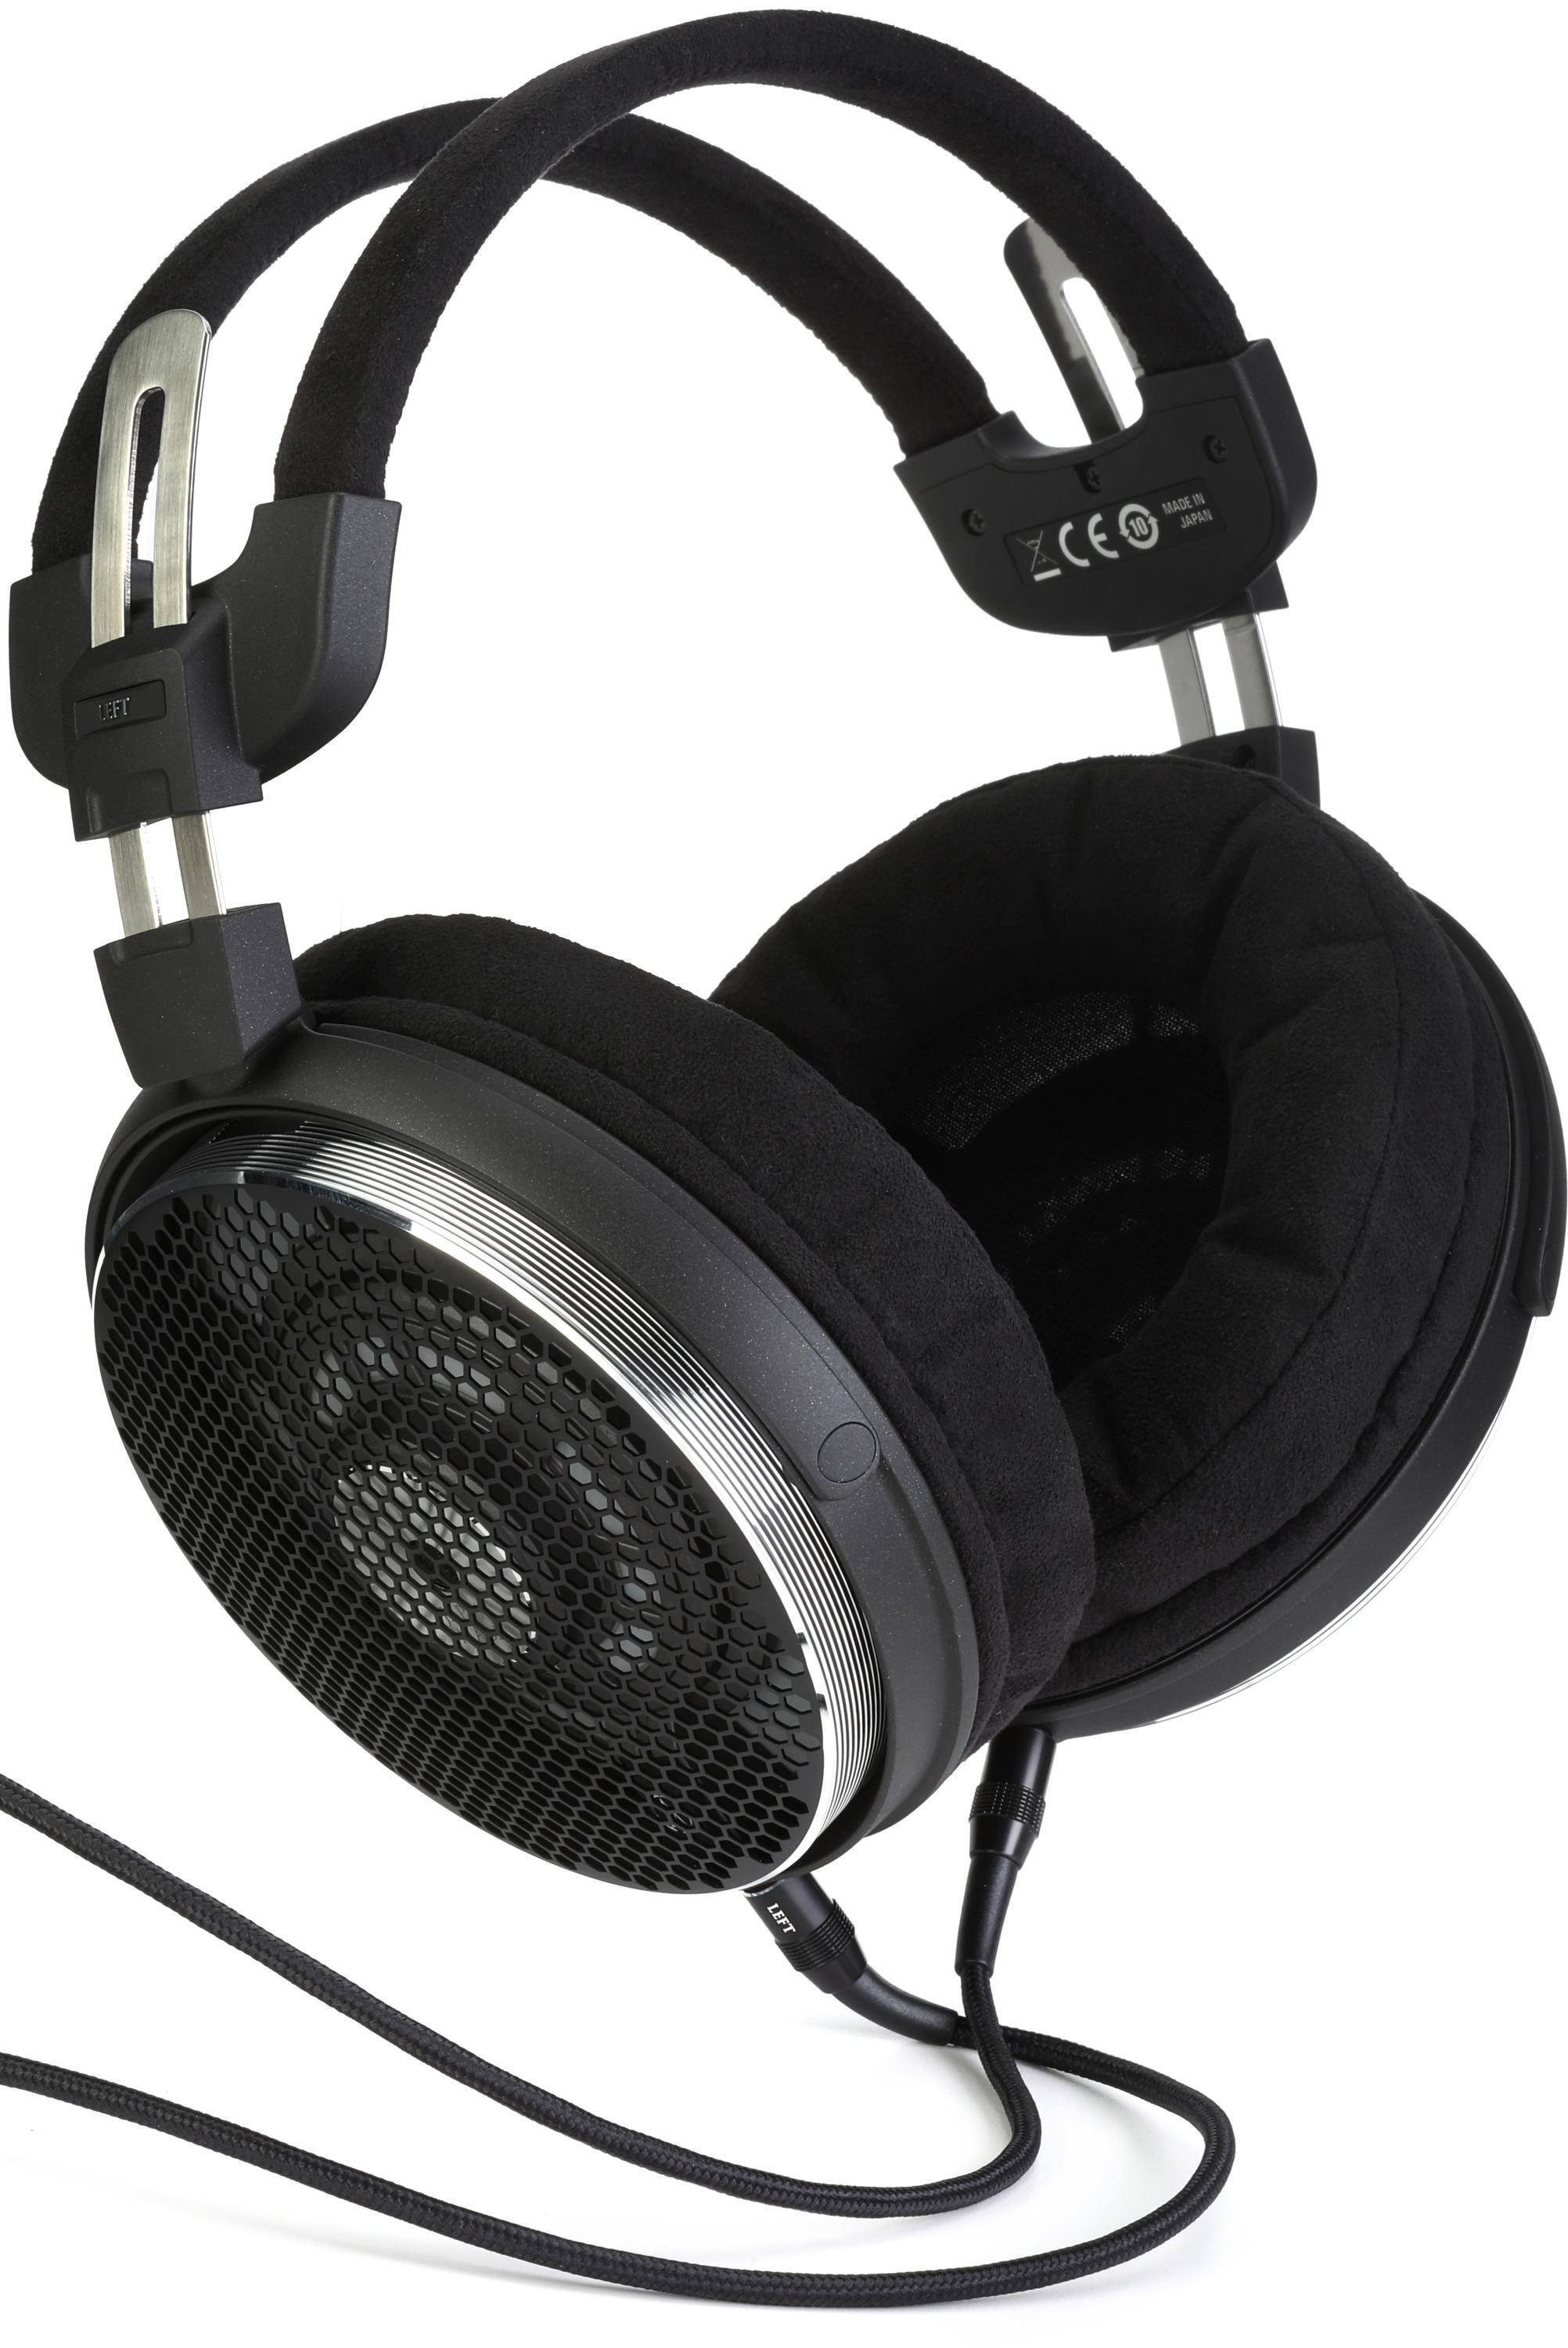 Audio-Technica ATH-ADX5000 auriculares - Audio y Cine